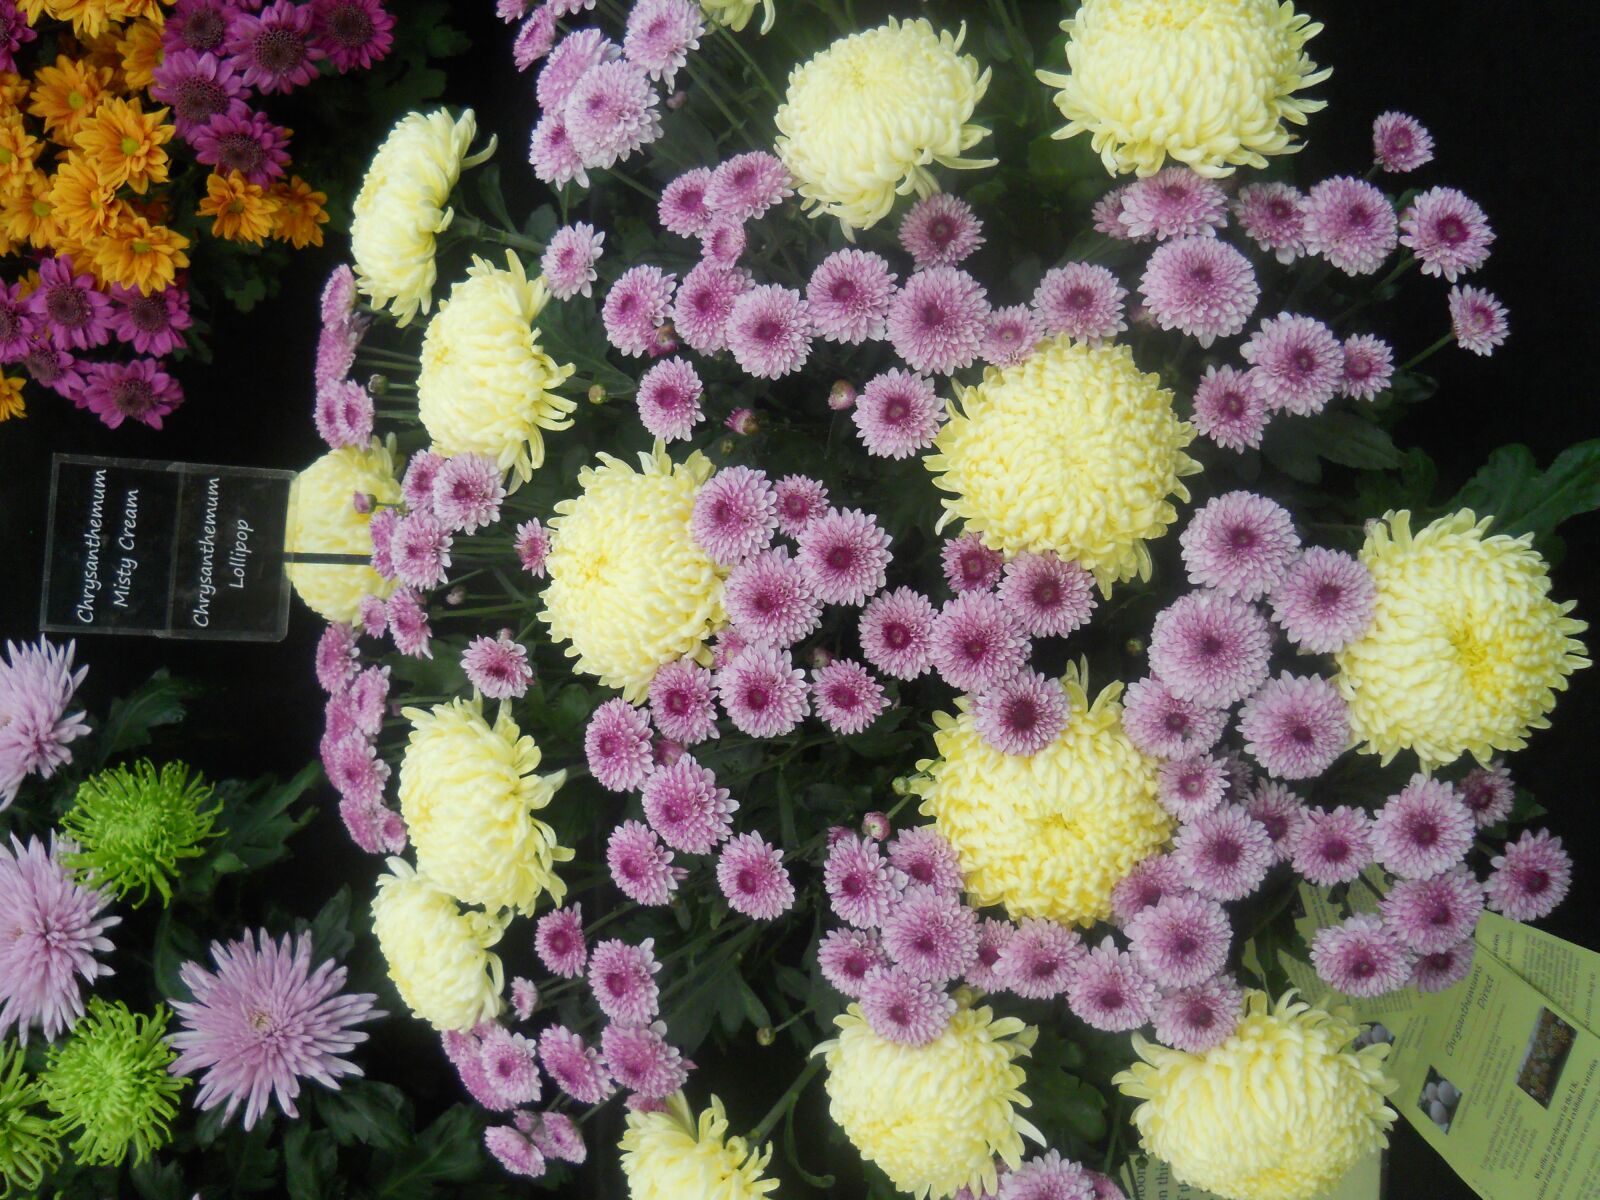 Nikon Coolpix L22 sample photo. Flowers, flower show, color photography